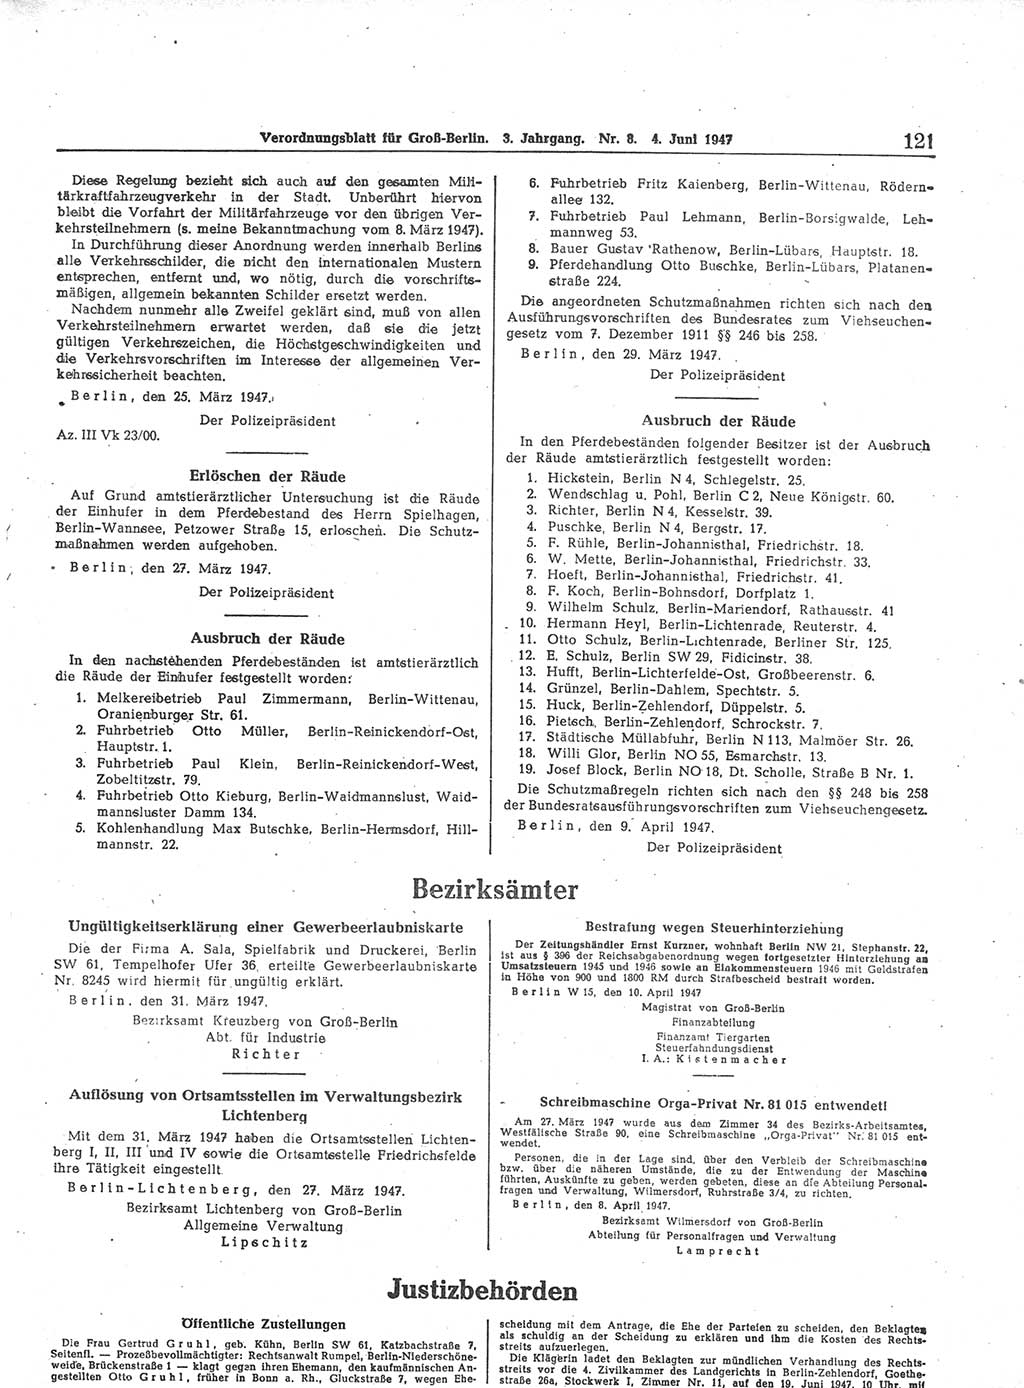 Verordnungsblatt (VOBl.) für Groß-Berlin 1947, Seite 121 (VOBl. Bln. 1947, S. 121)